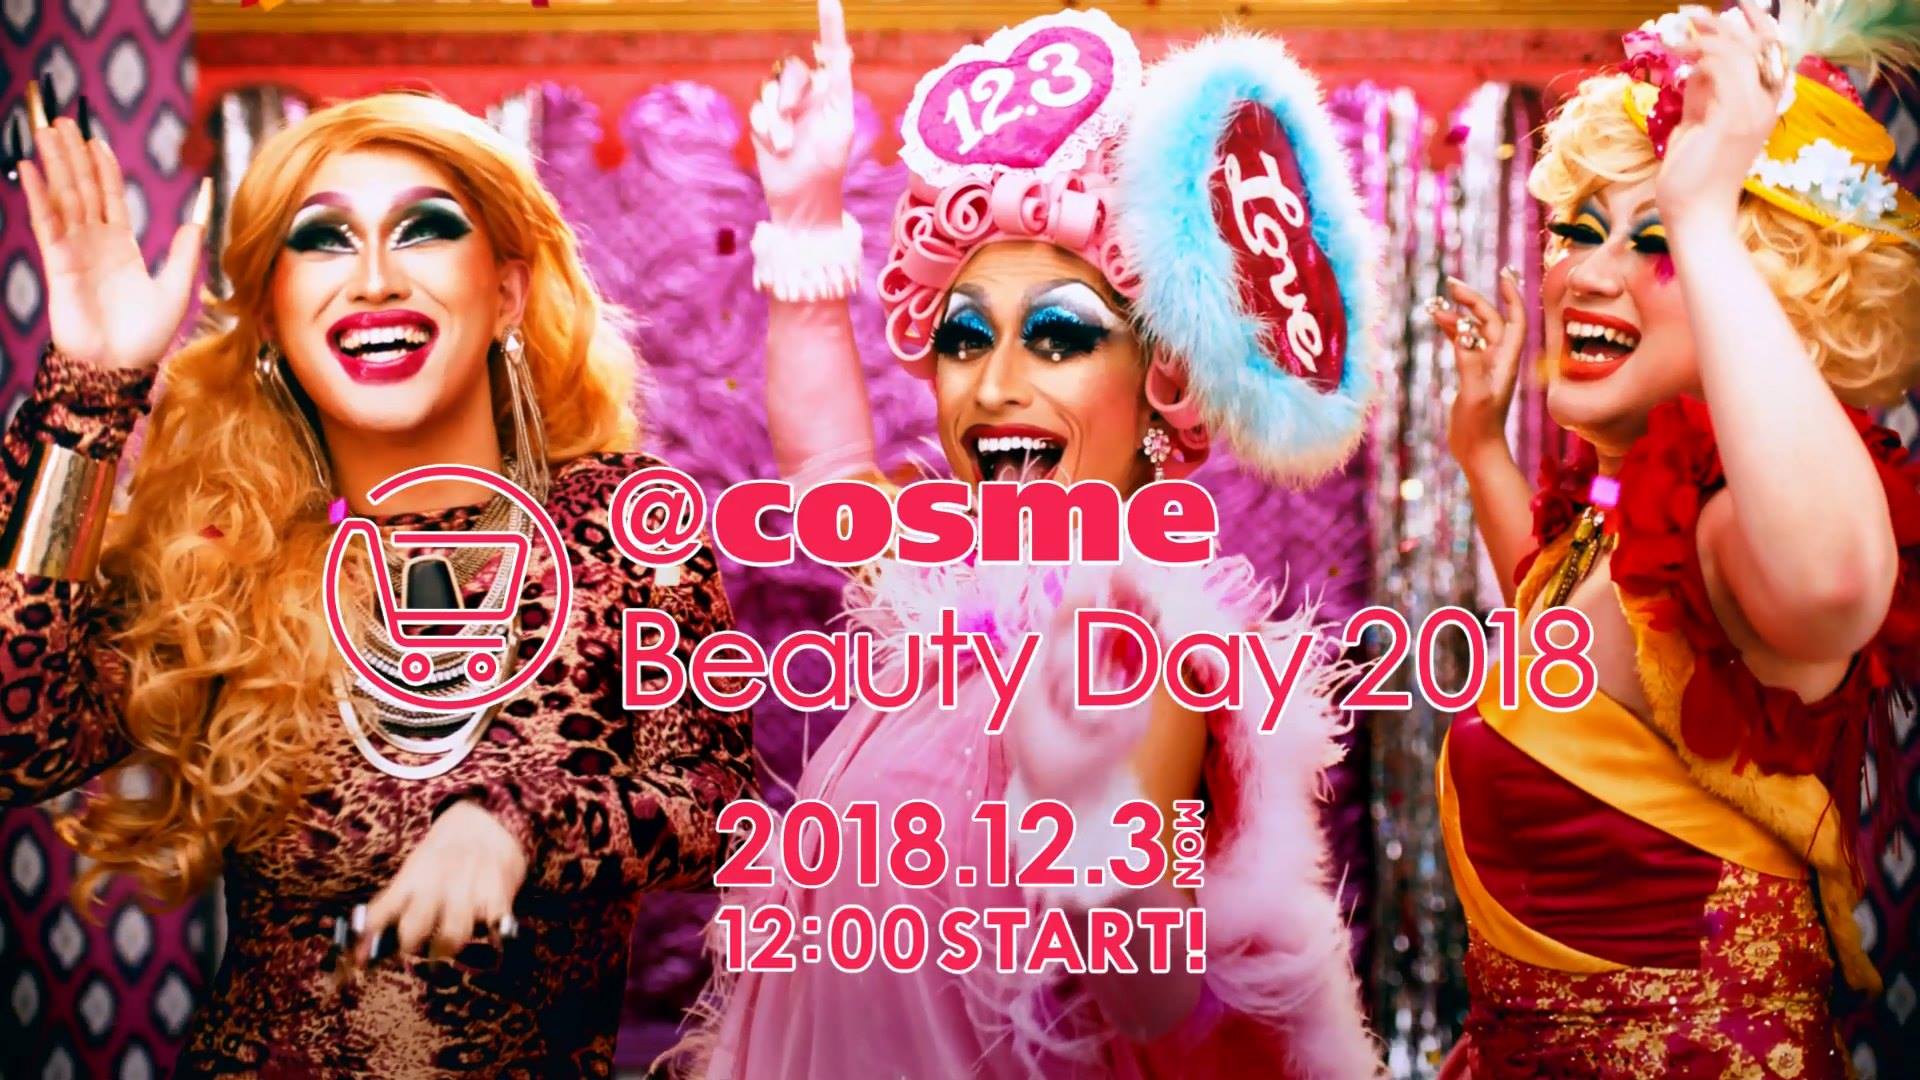 ドラァグクイーンも狂喜乱舞のコスメ祭り ｃｏｓｍｅ公式通販セール ｃｏｓｍｅ Beauty Day 18 テレビcm公開 株式会社アイスタイルのプレスリリース